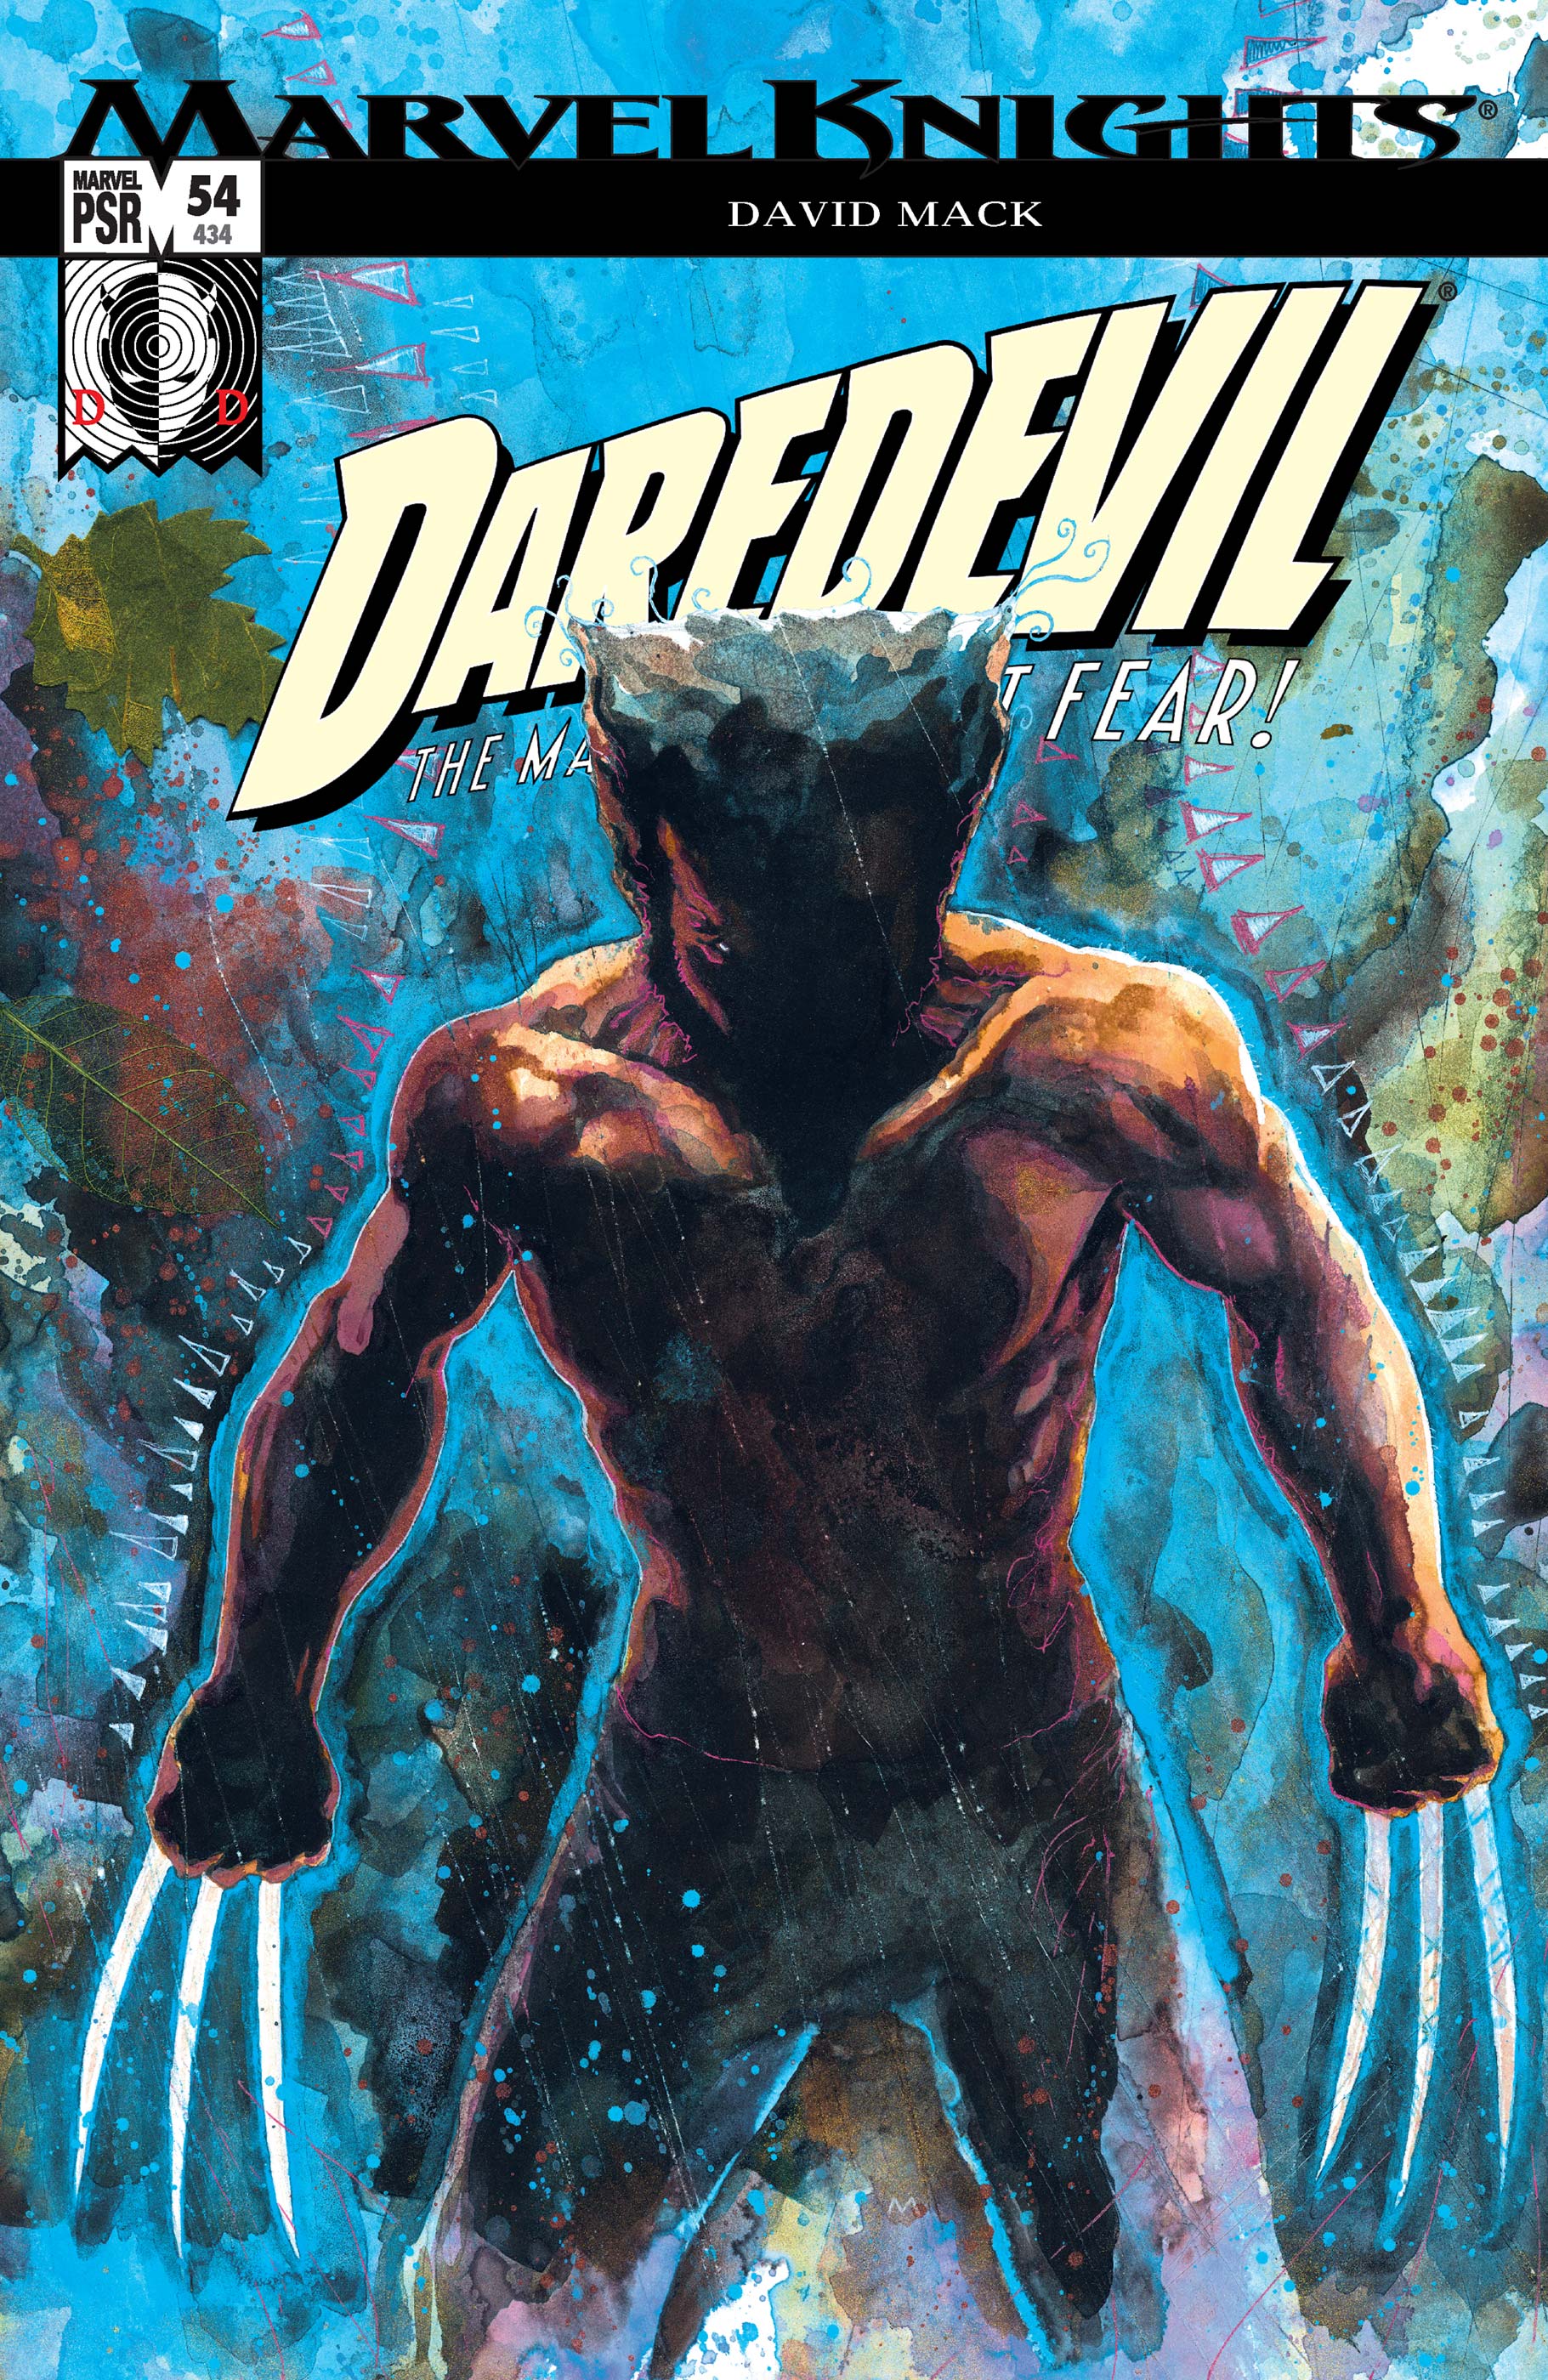 Daredevil (1998) #54